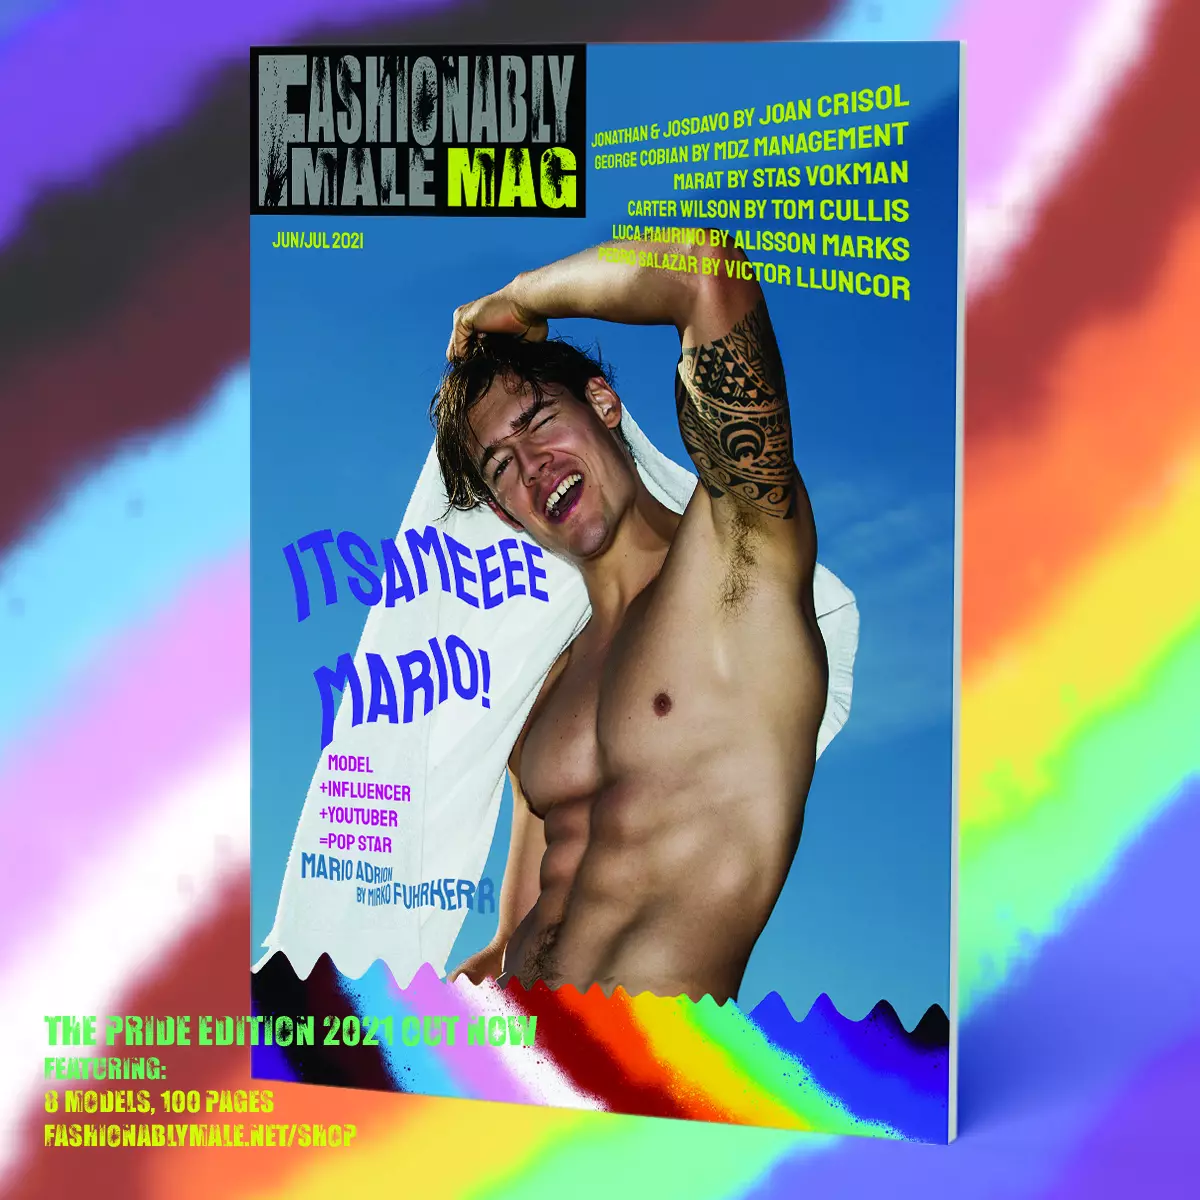 Марио Адрион сәнді Male Mag Pride Edition 2021 мұқаба өніміне арналған